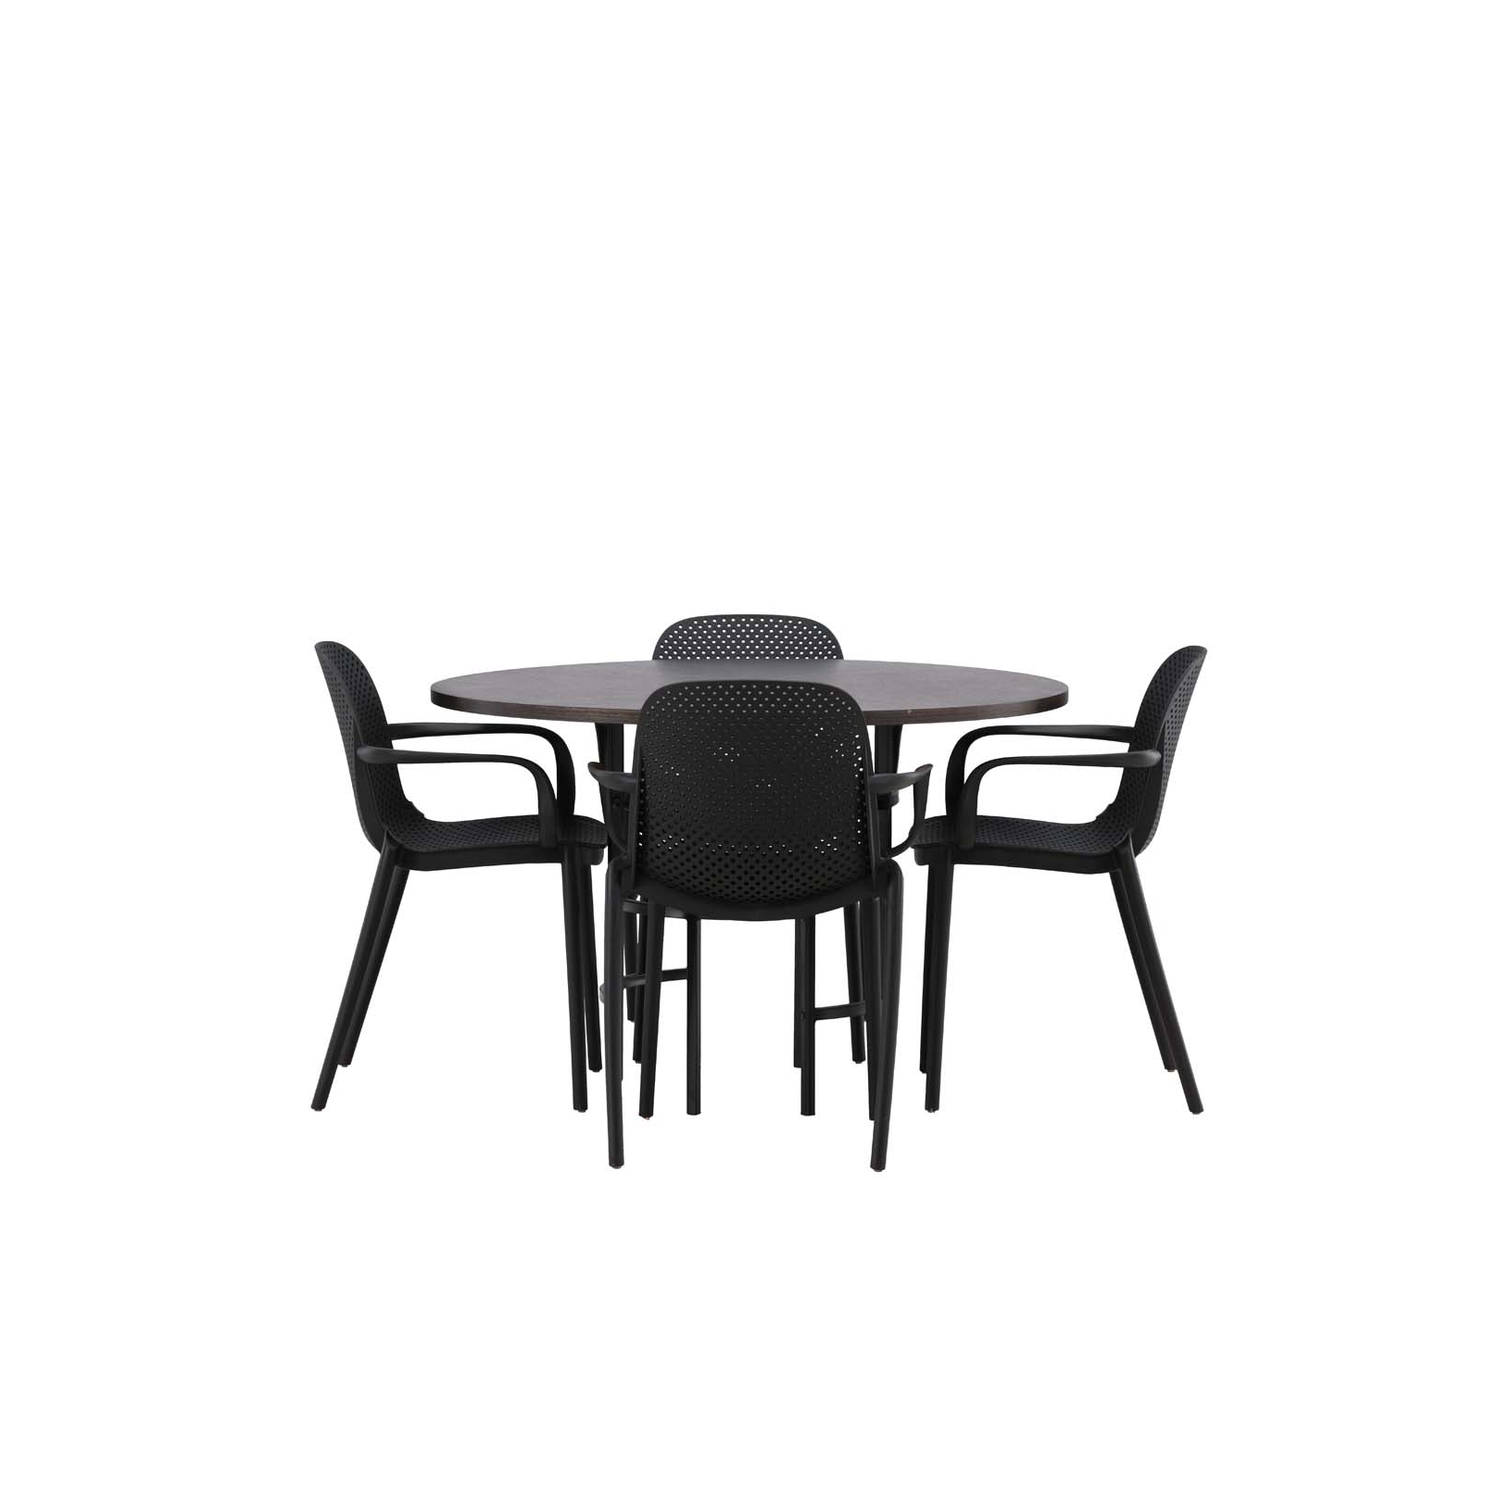 Copenhagen eethoek tafel mokka en 4 baltimore stoelen zwart.